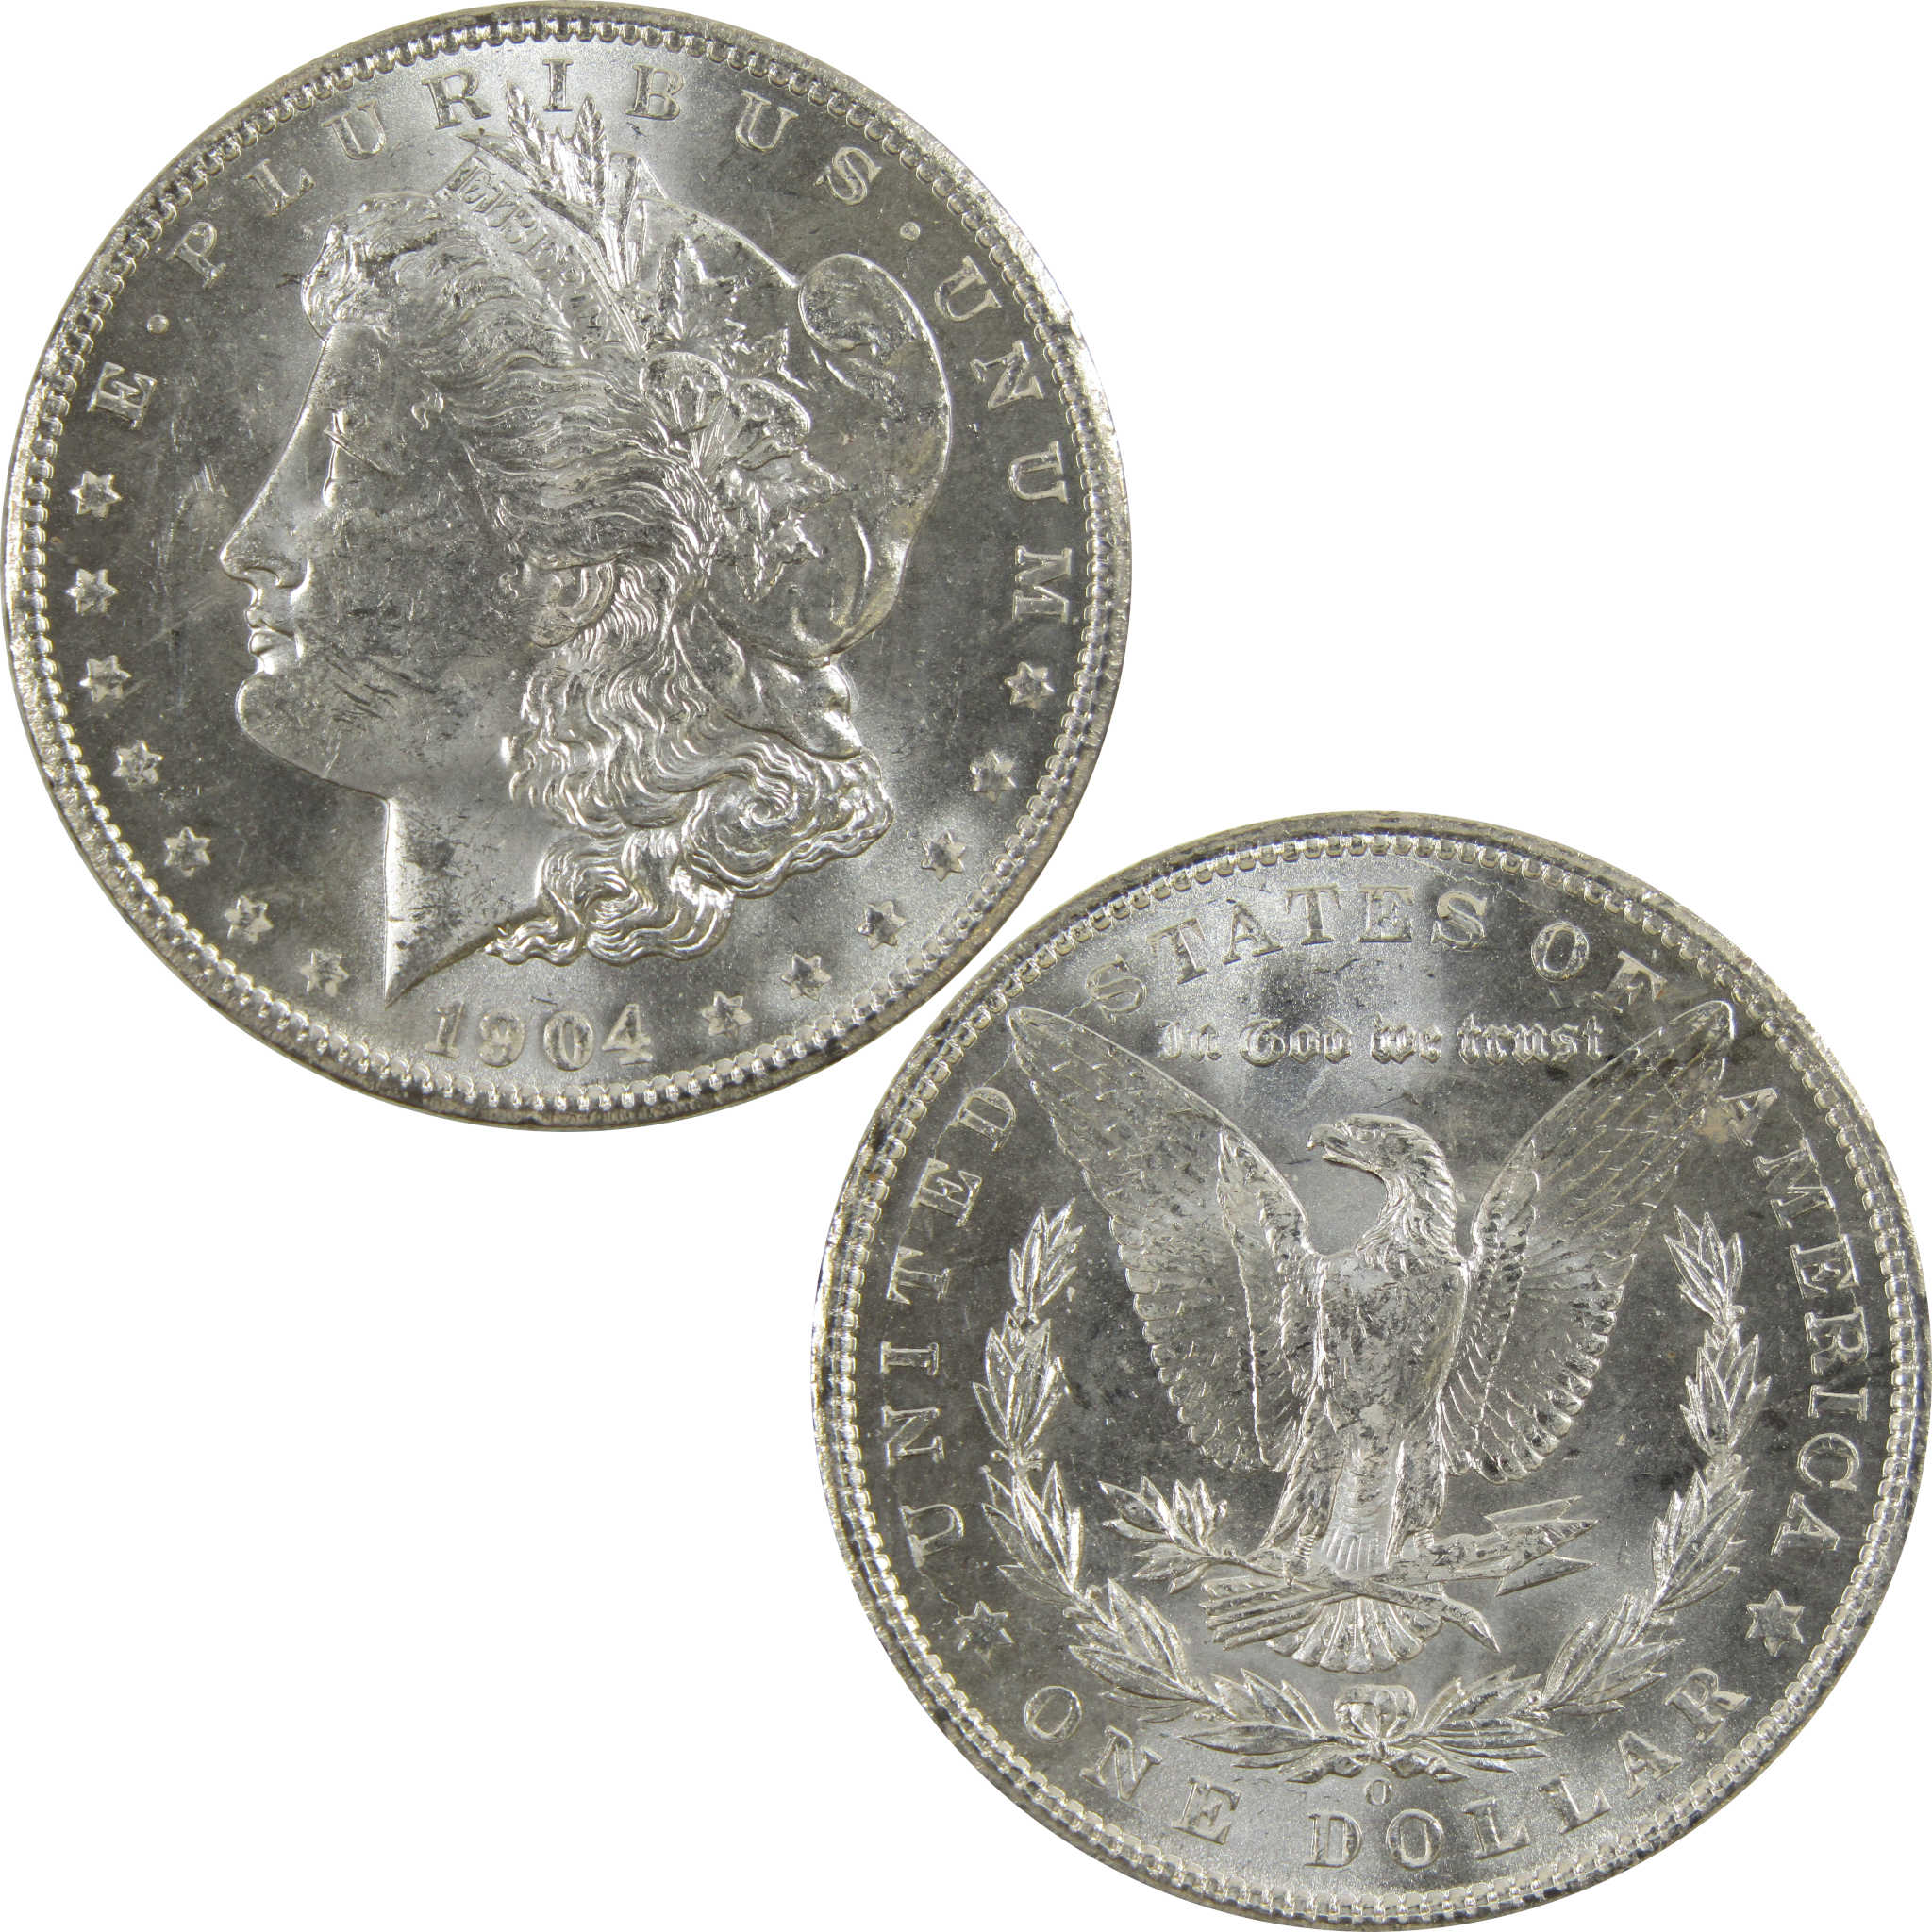 1904 O Morgan Dollar BU Uncirculated 90% Silver $1 Coin SKU:I5219 - Morgan coin - Morgan silver dollar - Morgan silver dollar for sale - Profile Coins &amp; Collectibles